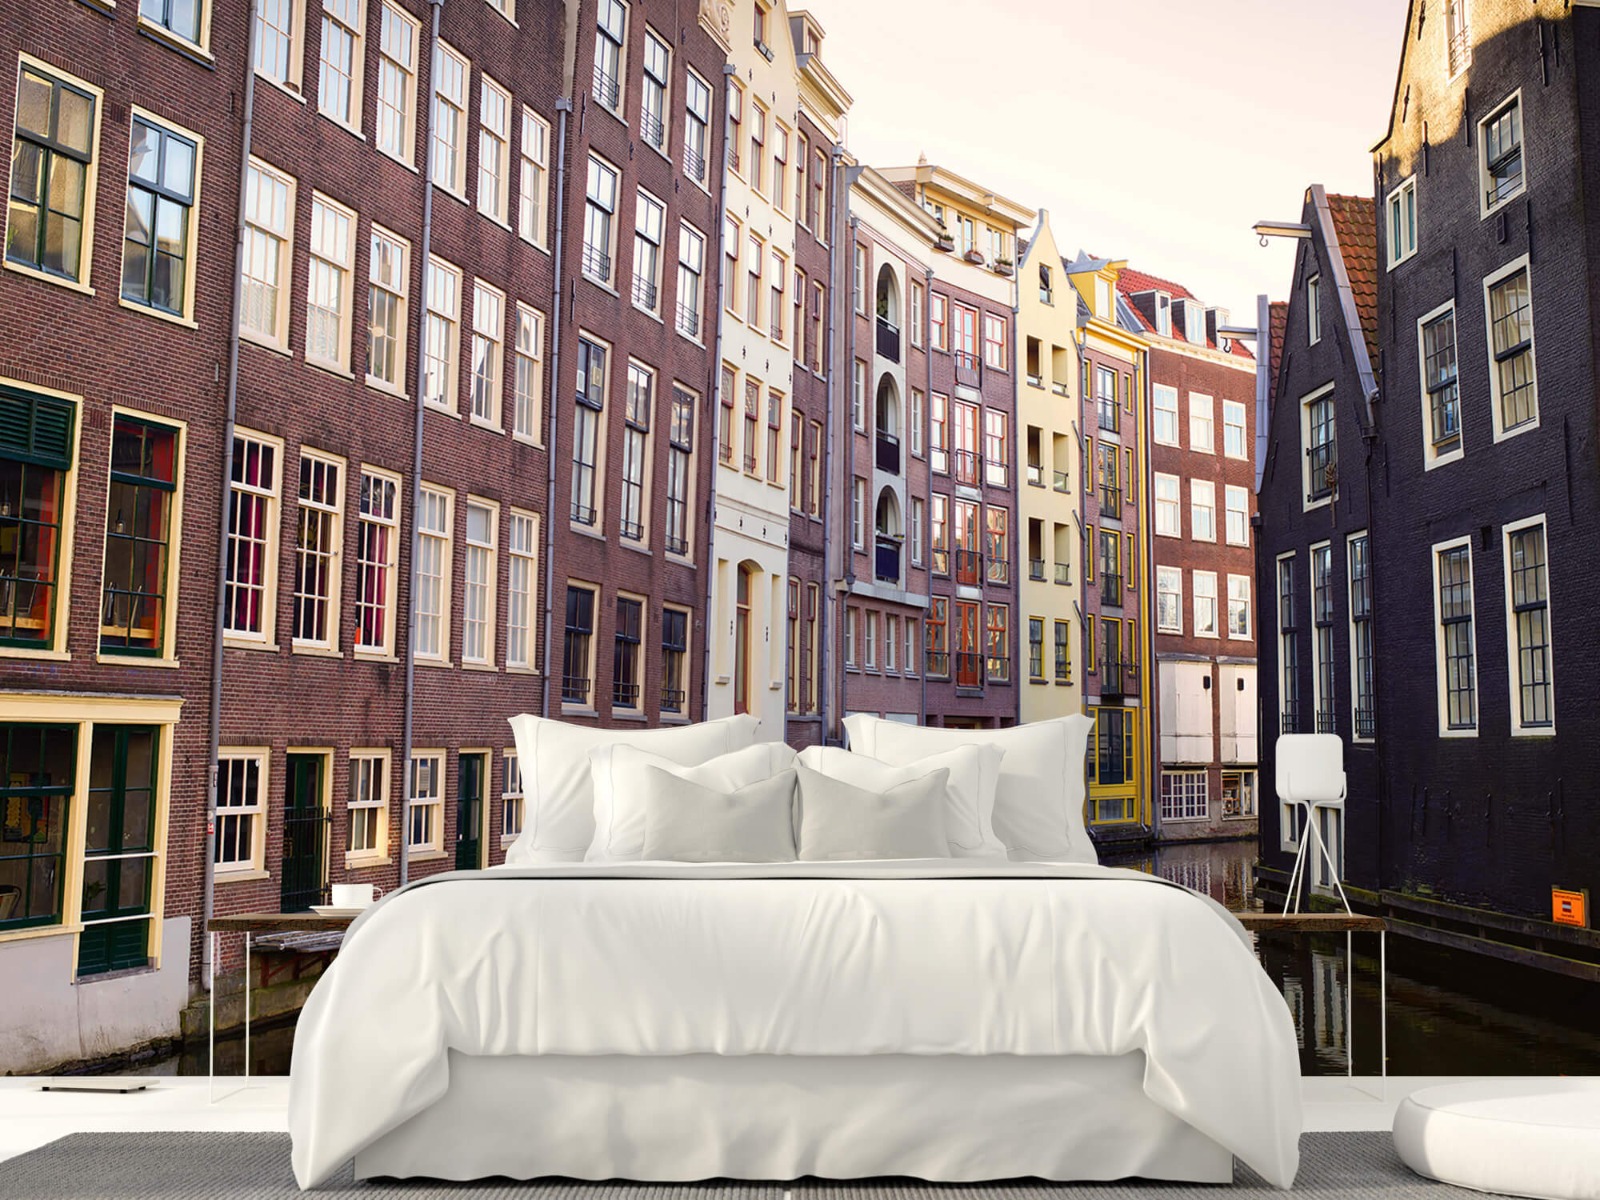 Gebouwen - Amsterdamse huizen aan de gracht - Tienerkamer 23